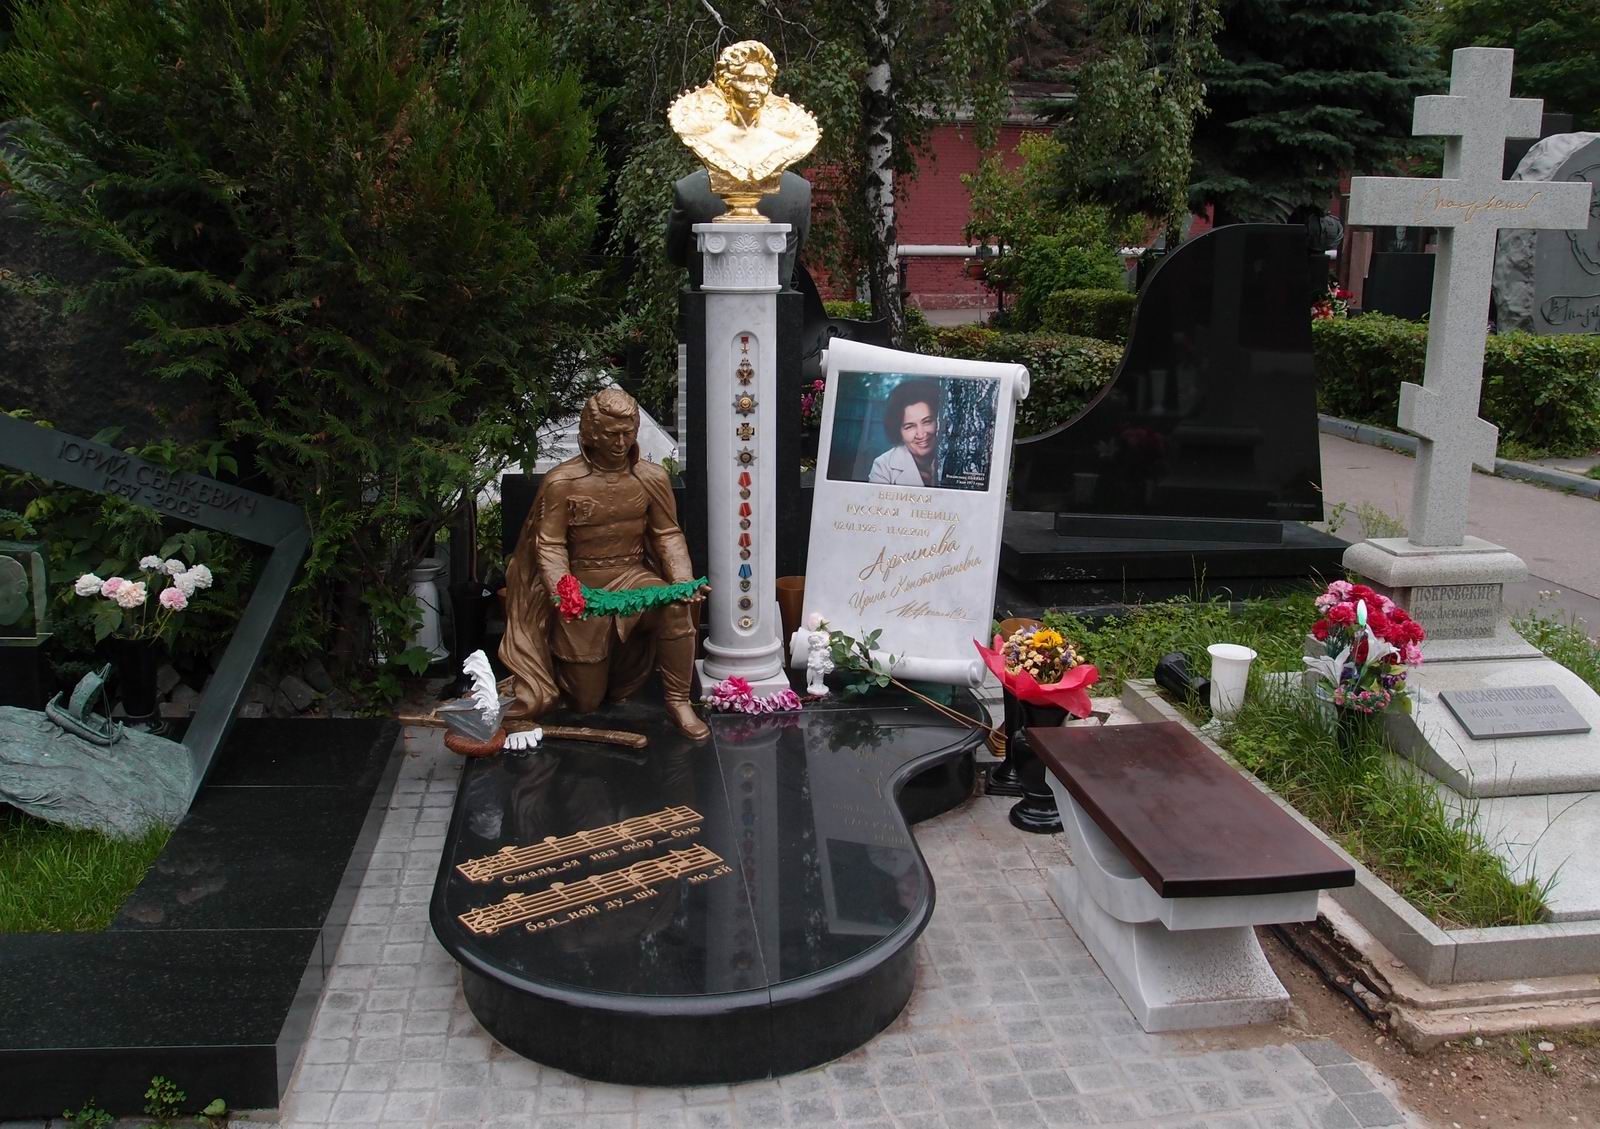 Памятник на могиле Архиповой И.К. (1925-2010), на Новодевичьем кладбище (10-8-18). Нажмите левую кнопку мыши чтобы увидеть фрагмент памятника.